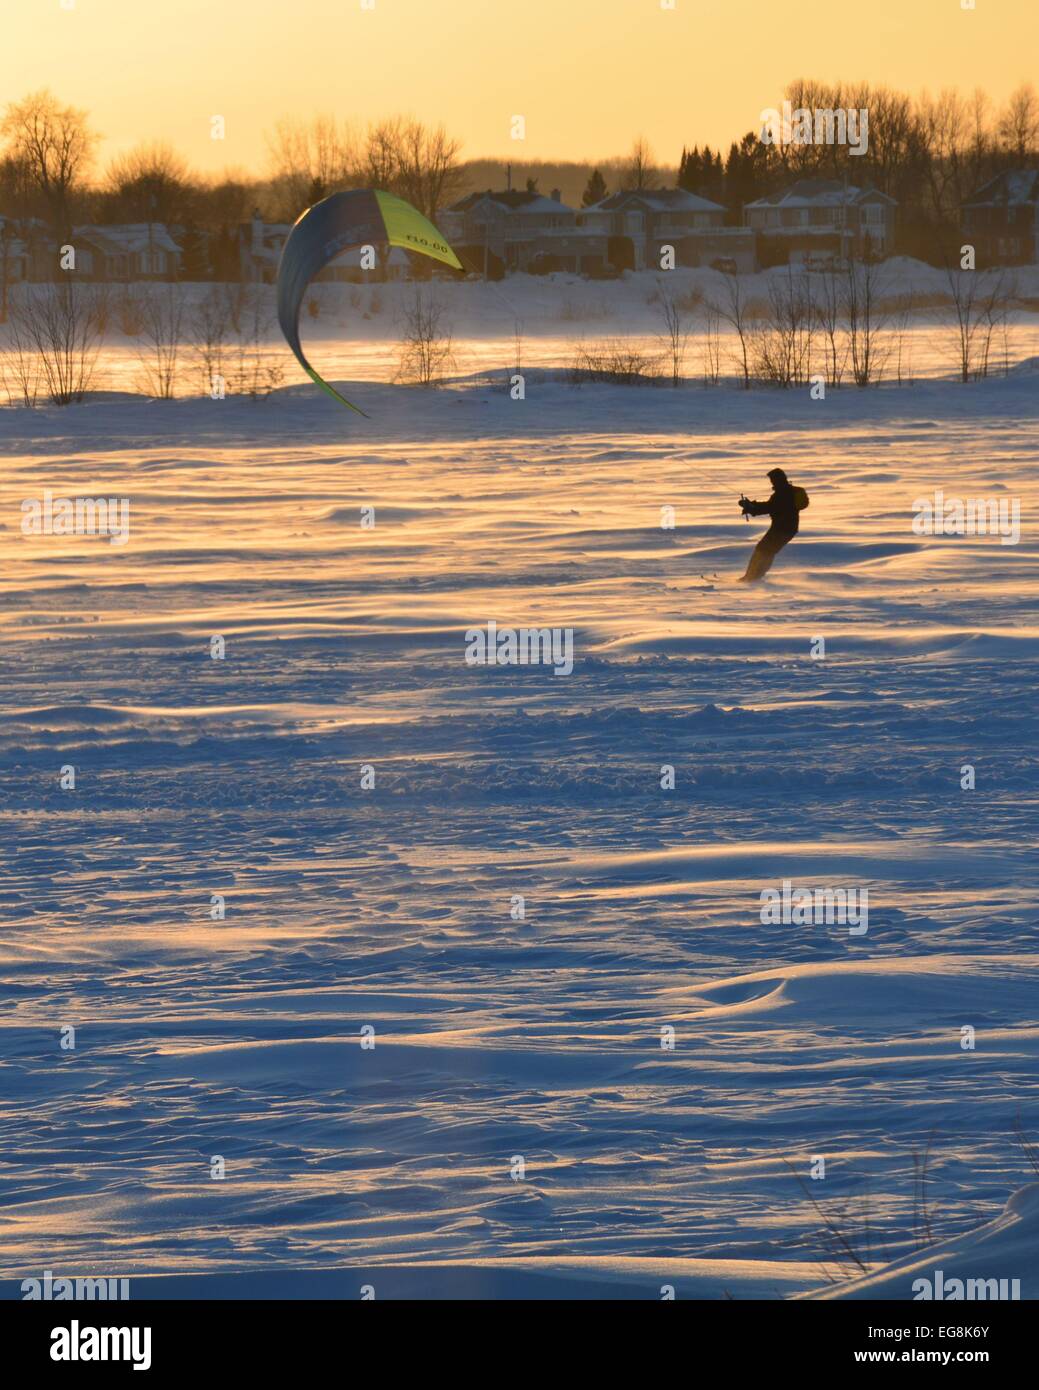 Il parasailing sul nord del lago Foto Stock